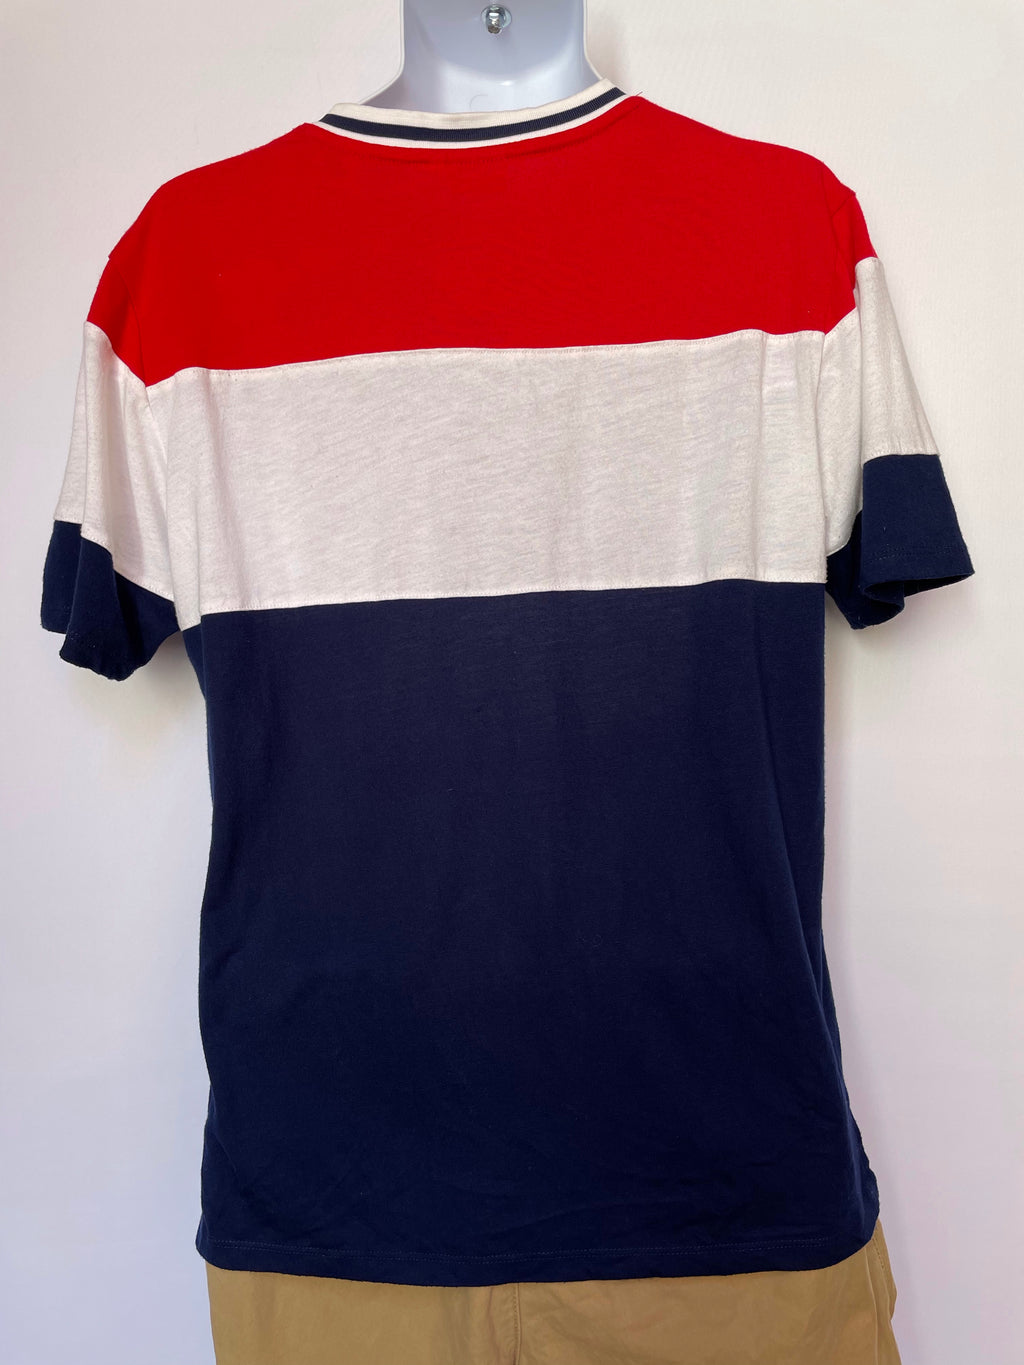 Fila Tri-Colour T-shirt - AS IS - wear